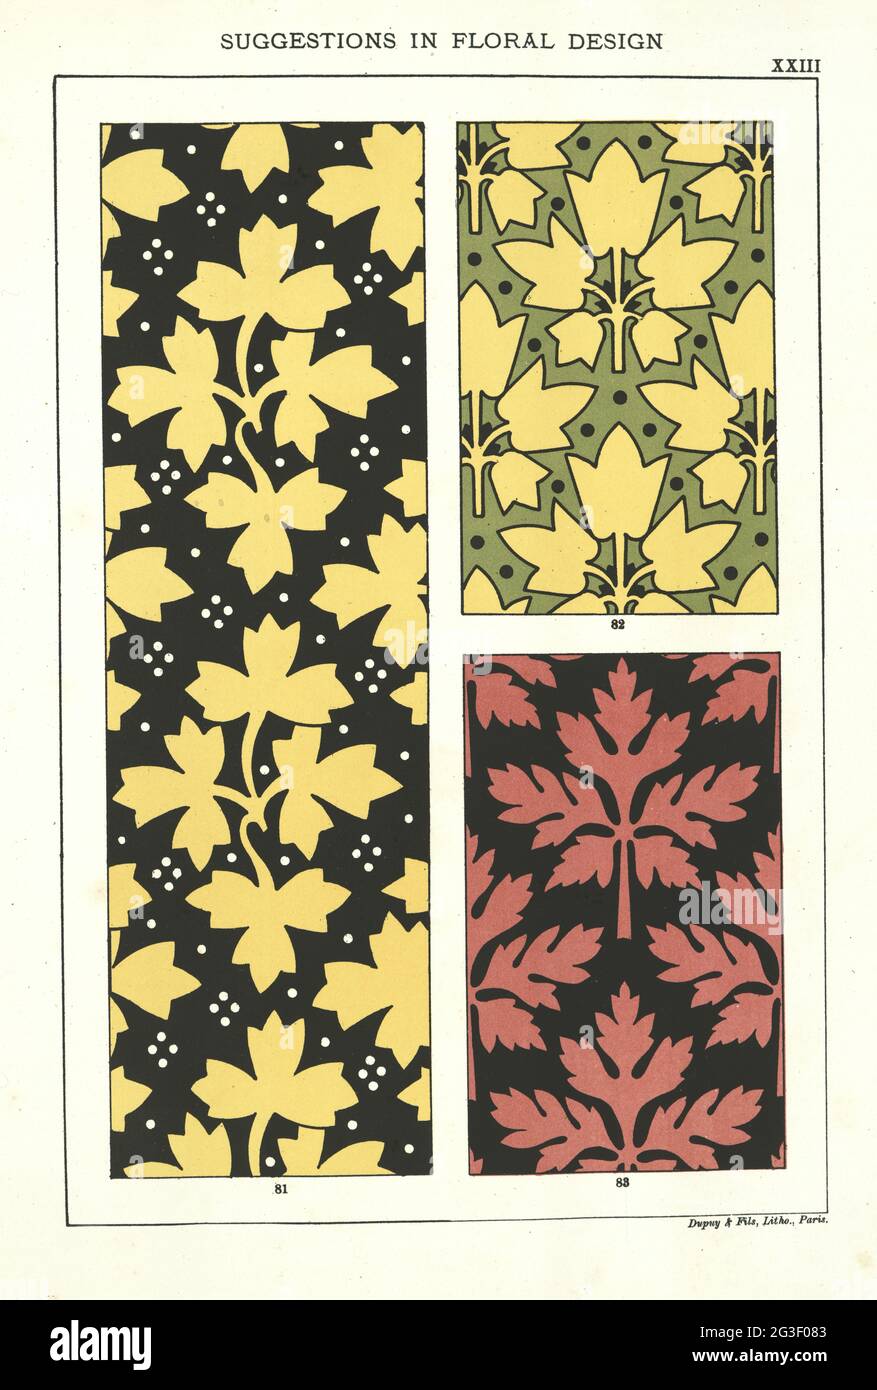 Vorschläge in floralem Design, wiederholenden Blattmustern, viktorianisches 19. Jahrhundert Stockfoto